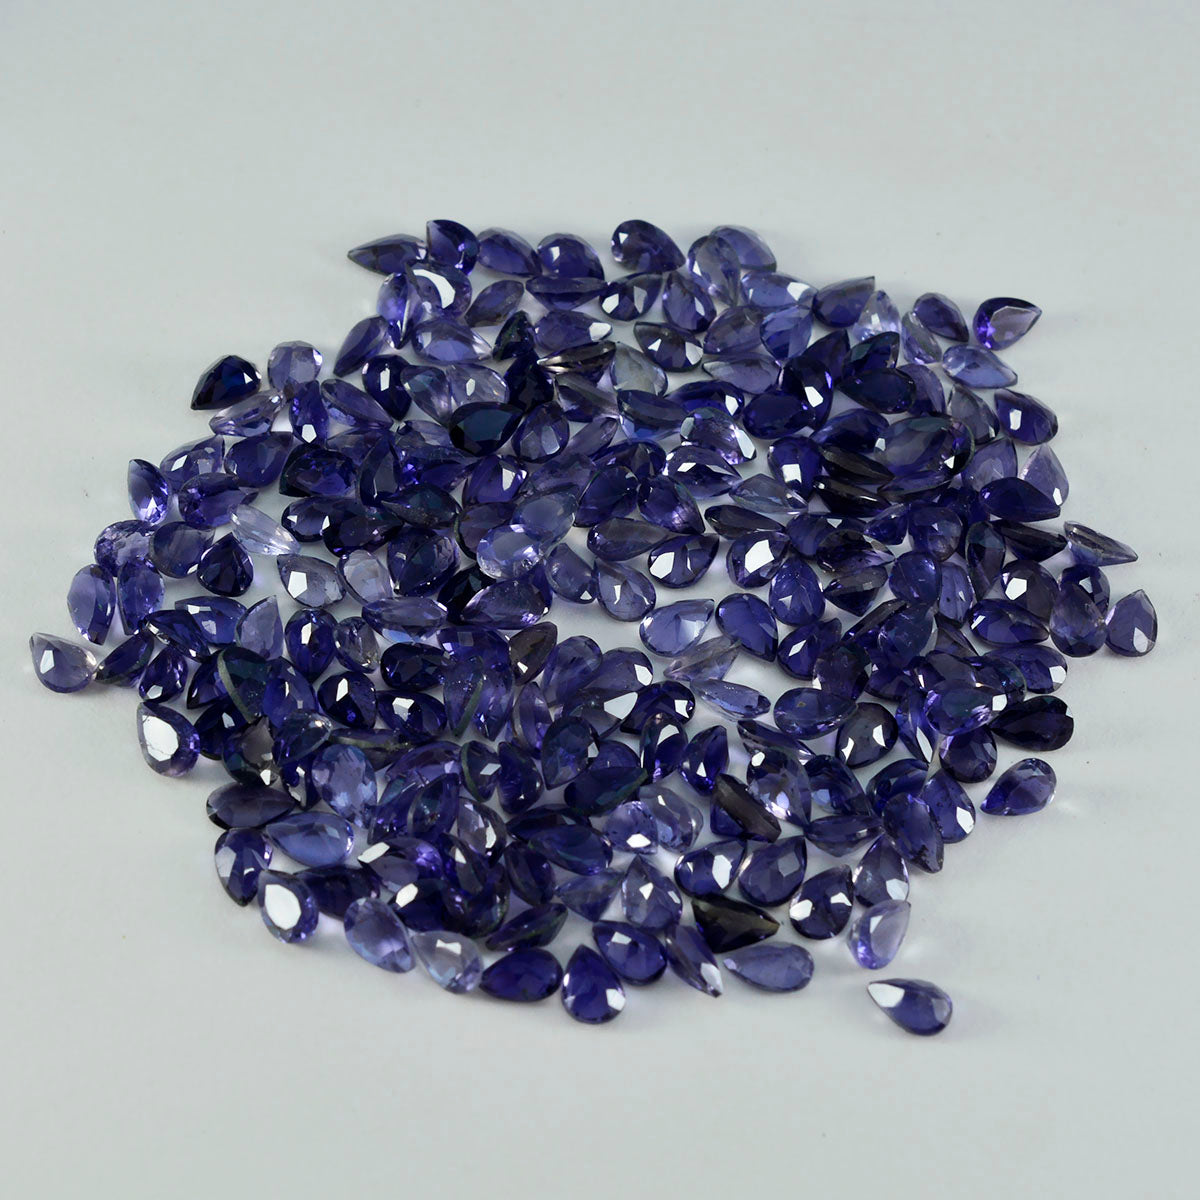 riyogems 1шт синий иолит ограненный 3х5 мм драгоценные камни грушевидной формы хорошего качества